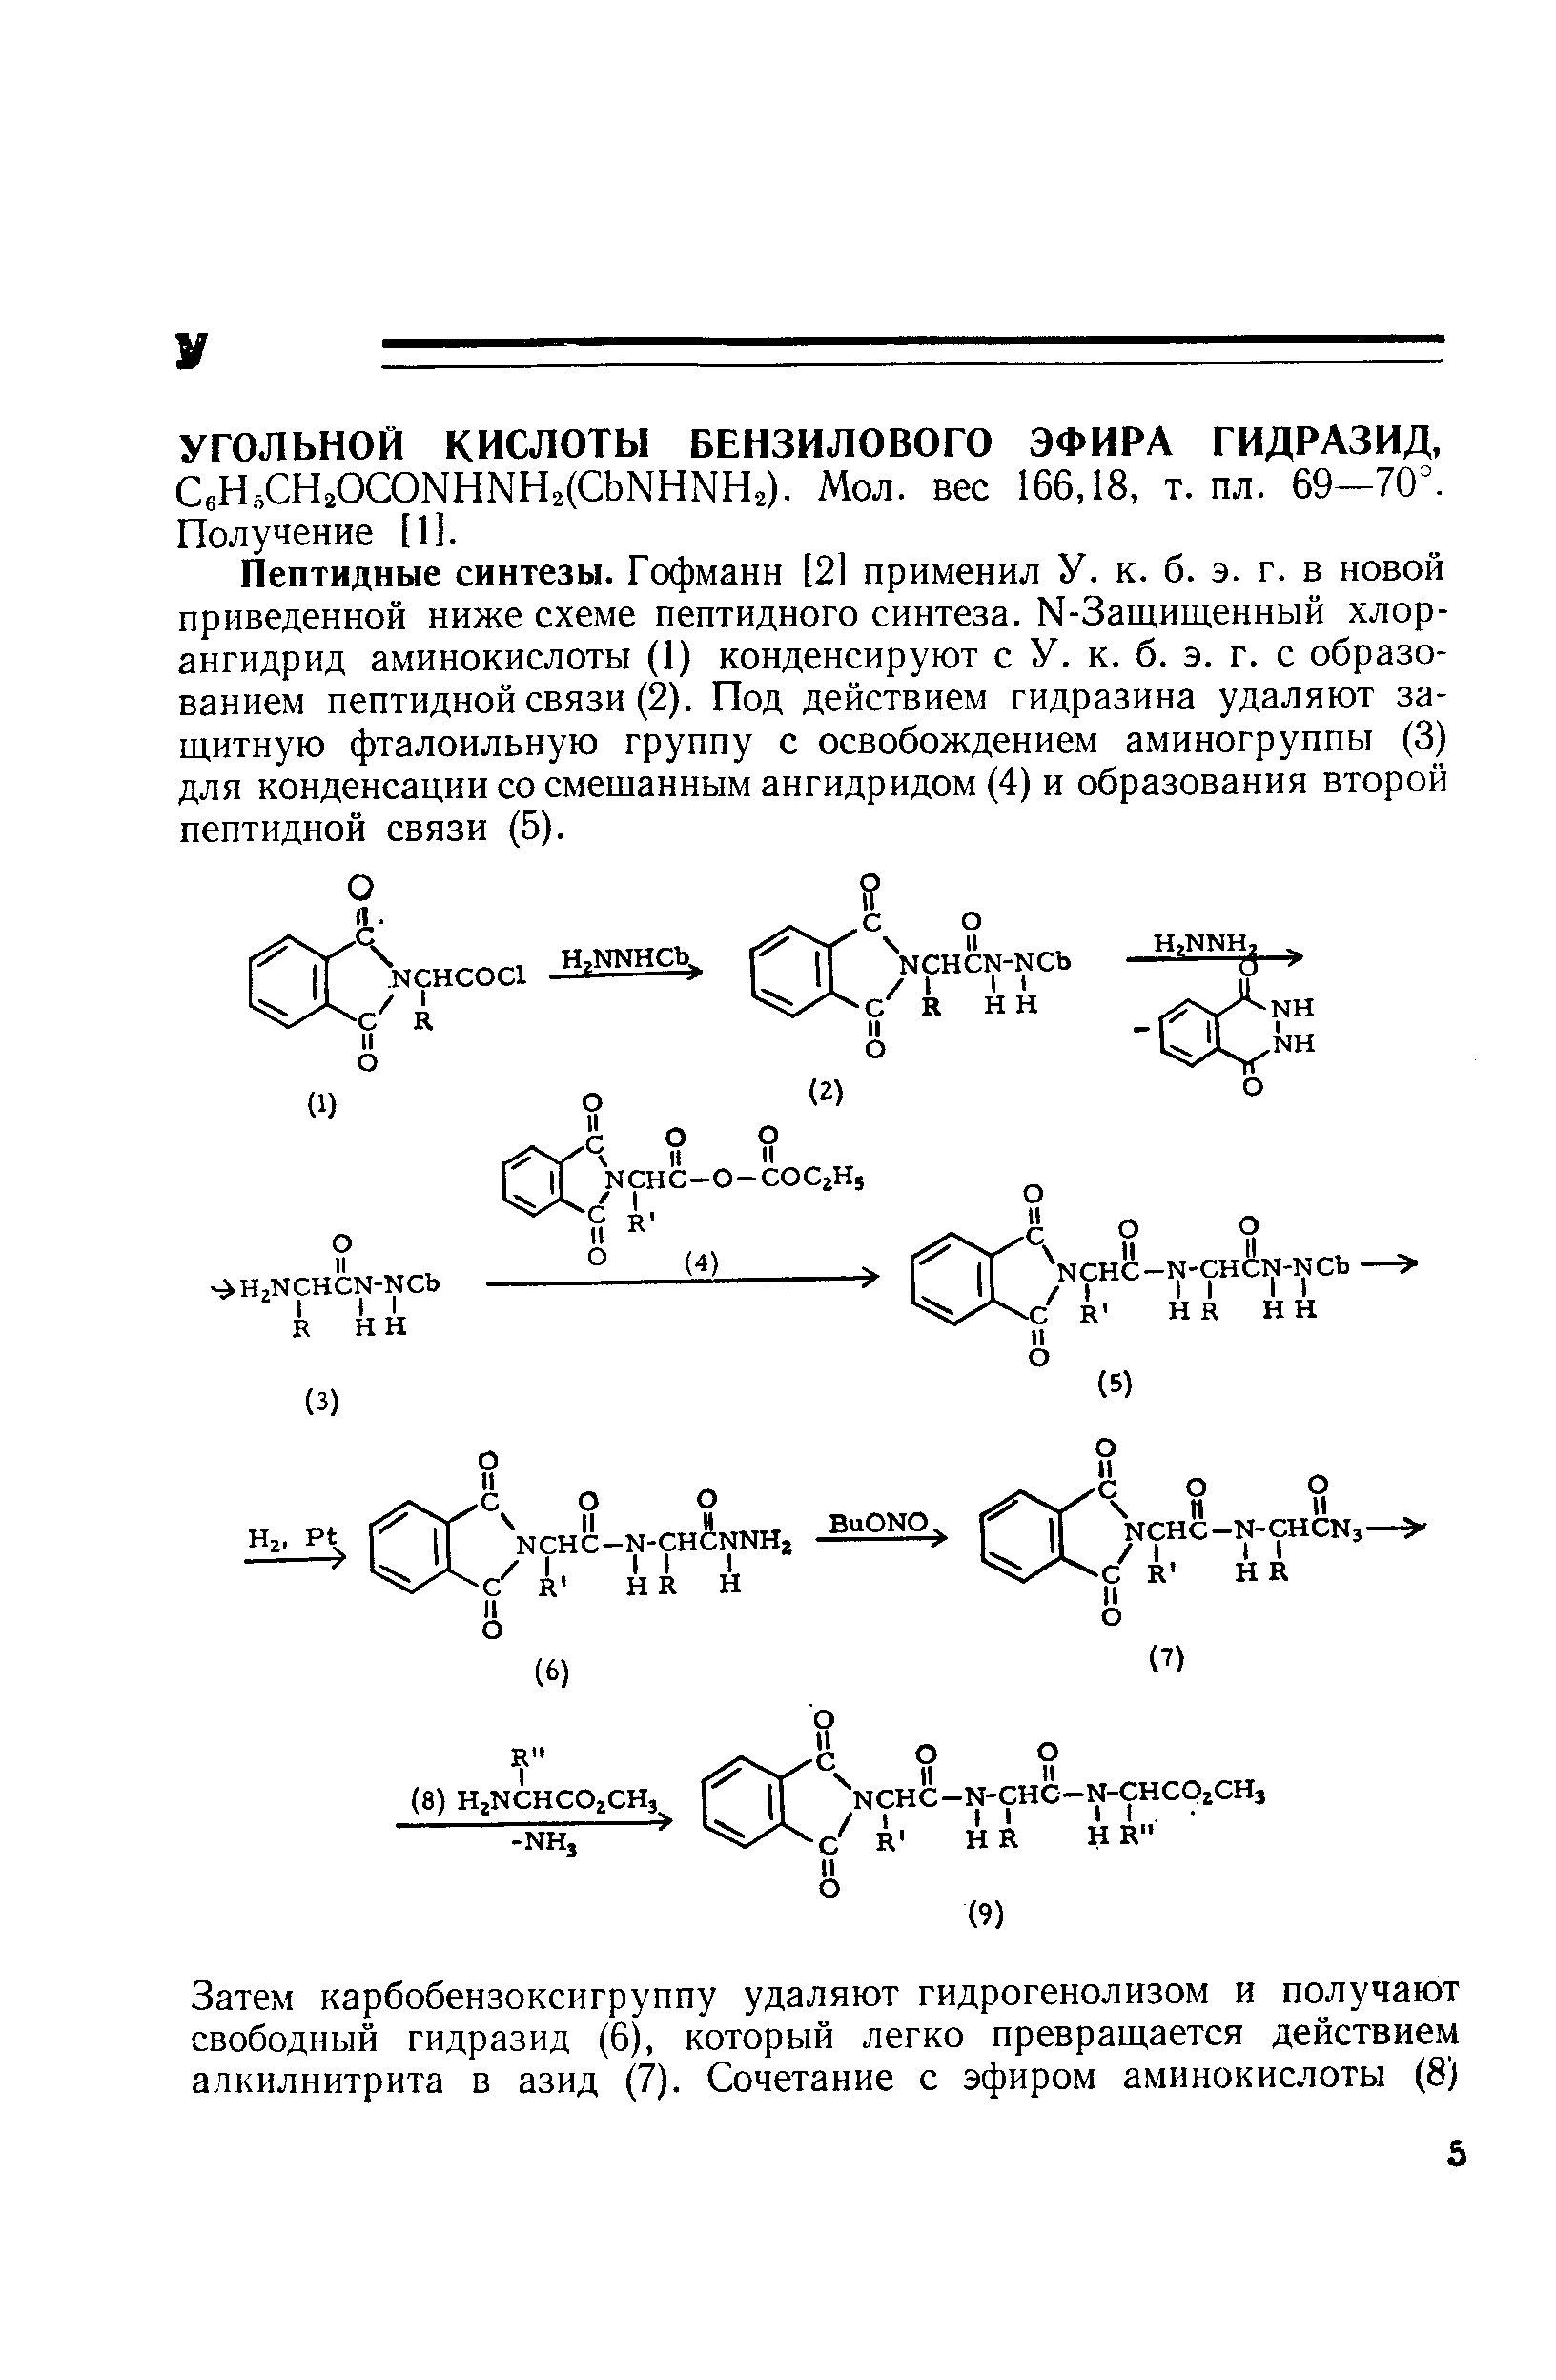 Пептидные синтезы. Гофманн [2] применил У. к. б. э. г. в новой приведенной ниже схеме пептидного синтеза. Ы-Защищенный хлор-ангидрид аминокислоты (1) конденсируют с У. к. б. э. г. с образованием пептидной связи (2). Под действием гидразина удаляют защитную фталоильную группу с освобождением аминогруппы (3) для конденсации со смешанным ангидридом (4) и образования второй пептидной связи (5).